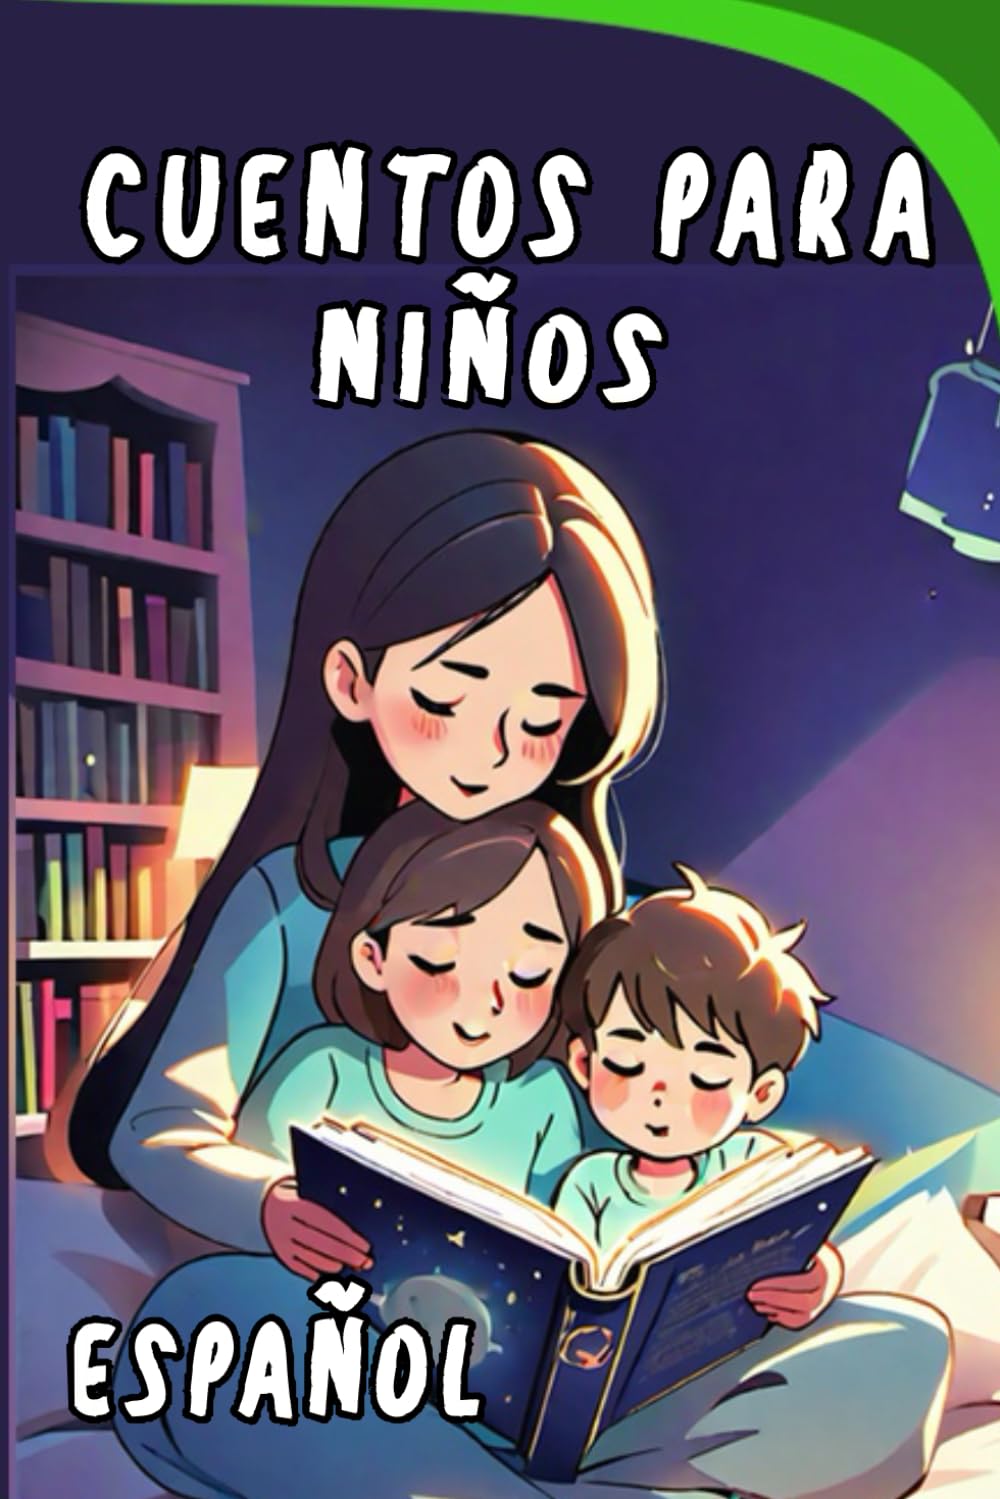 Cuentos Cortos para niños de 2 a 6 años - libros en español, Cuentos infantiles para leer antes de dormir (Spanish Edition)